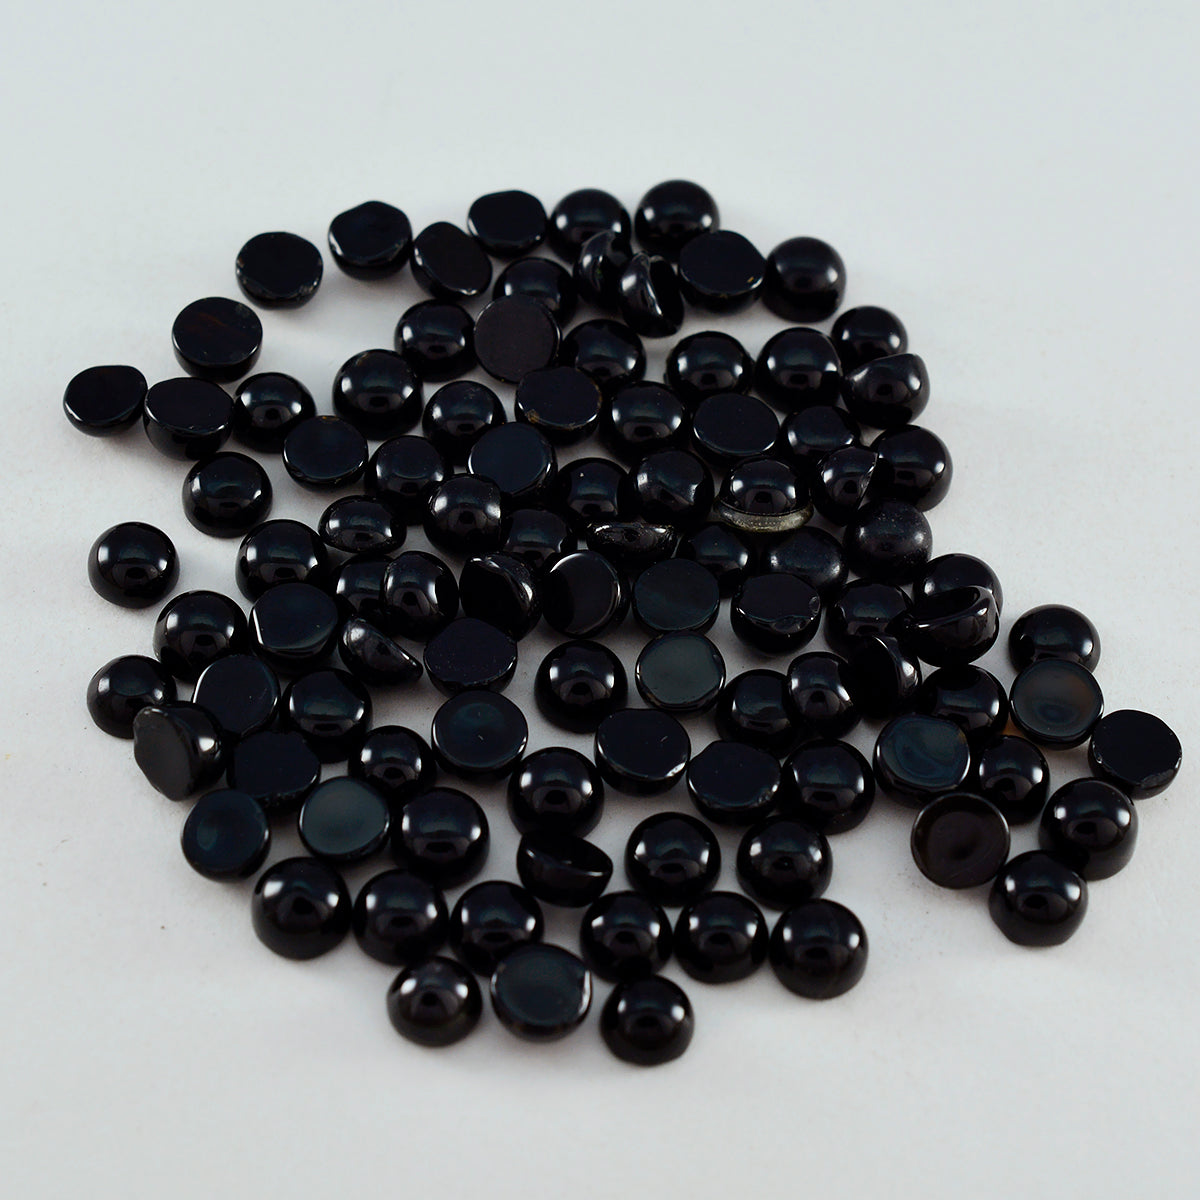 Riyogems 1 Stück schwarzer Onyx-Cabochon, 3 x 3 mm, runde Form, lose Edelsteine in AAA-Qualität